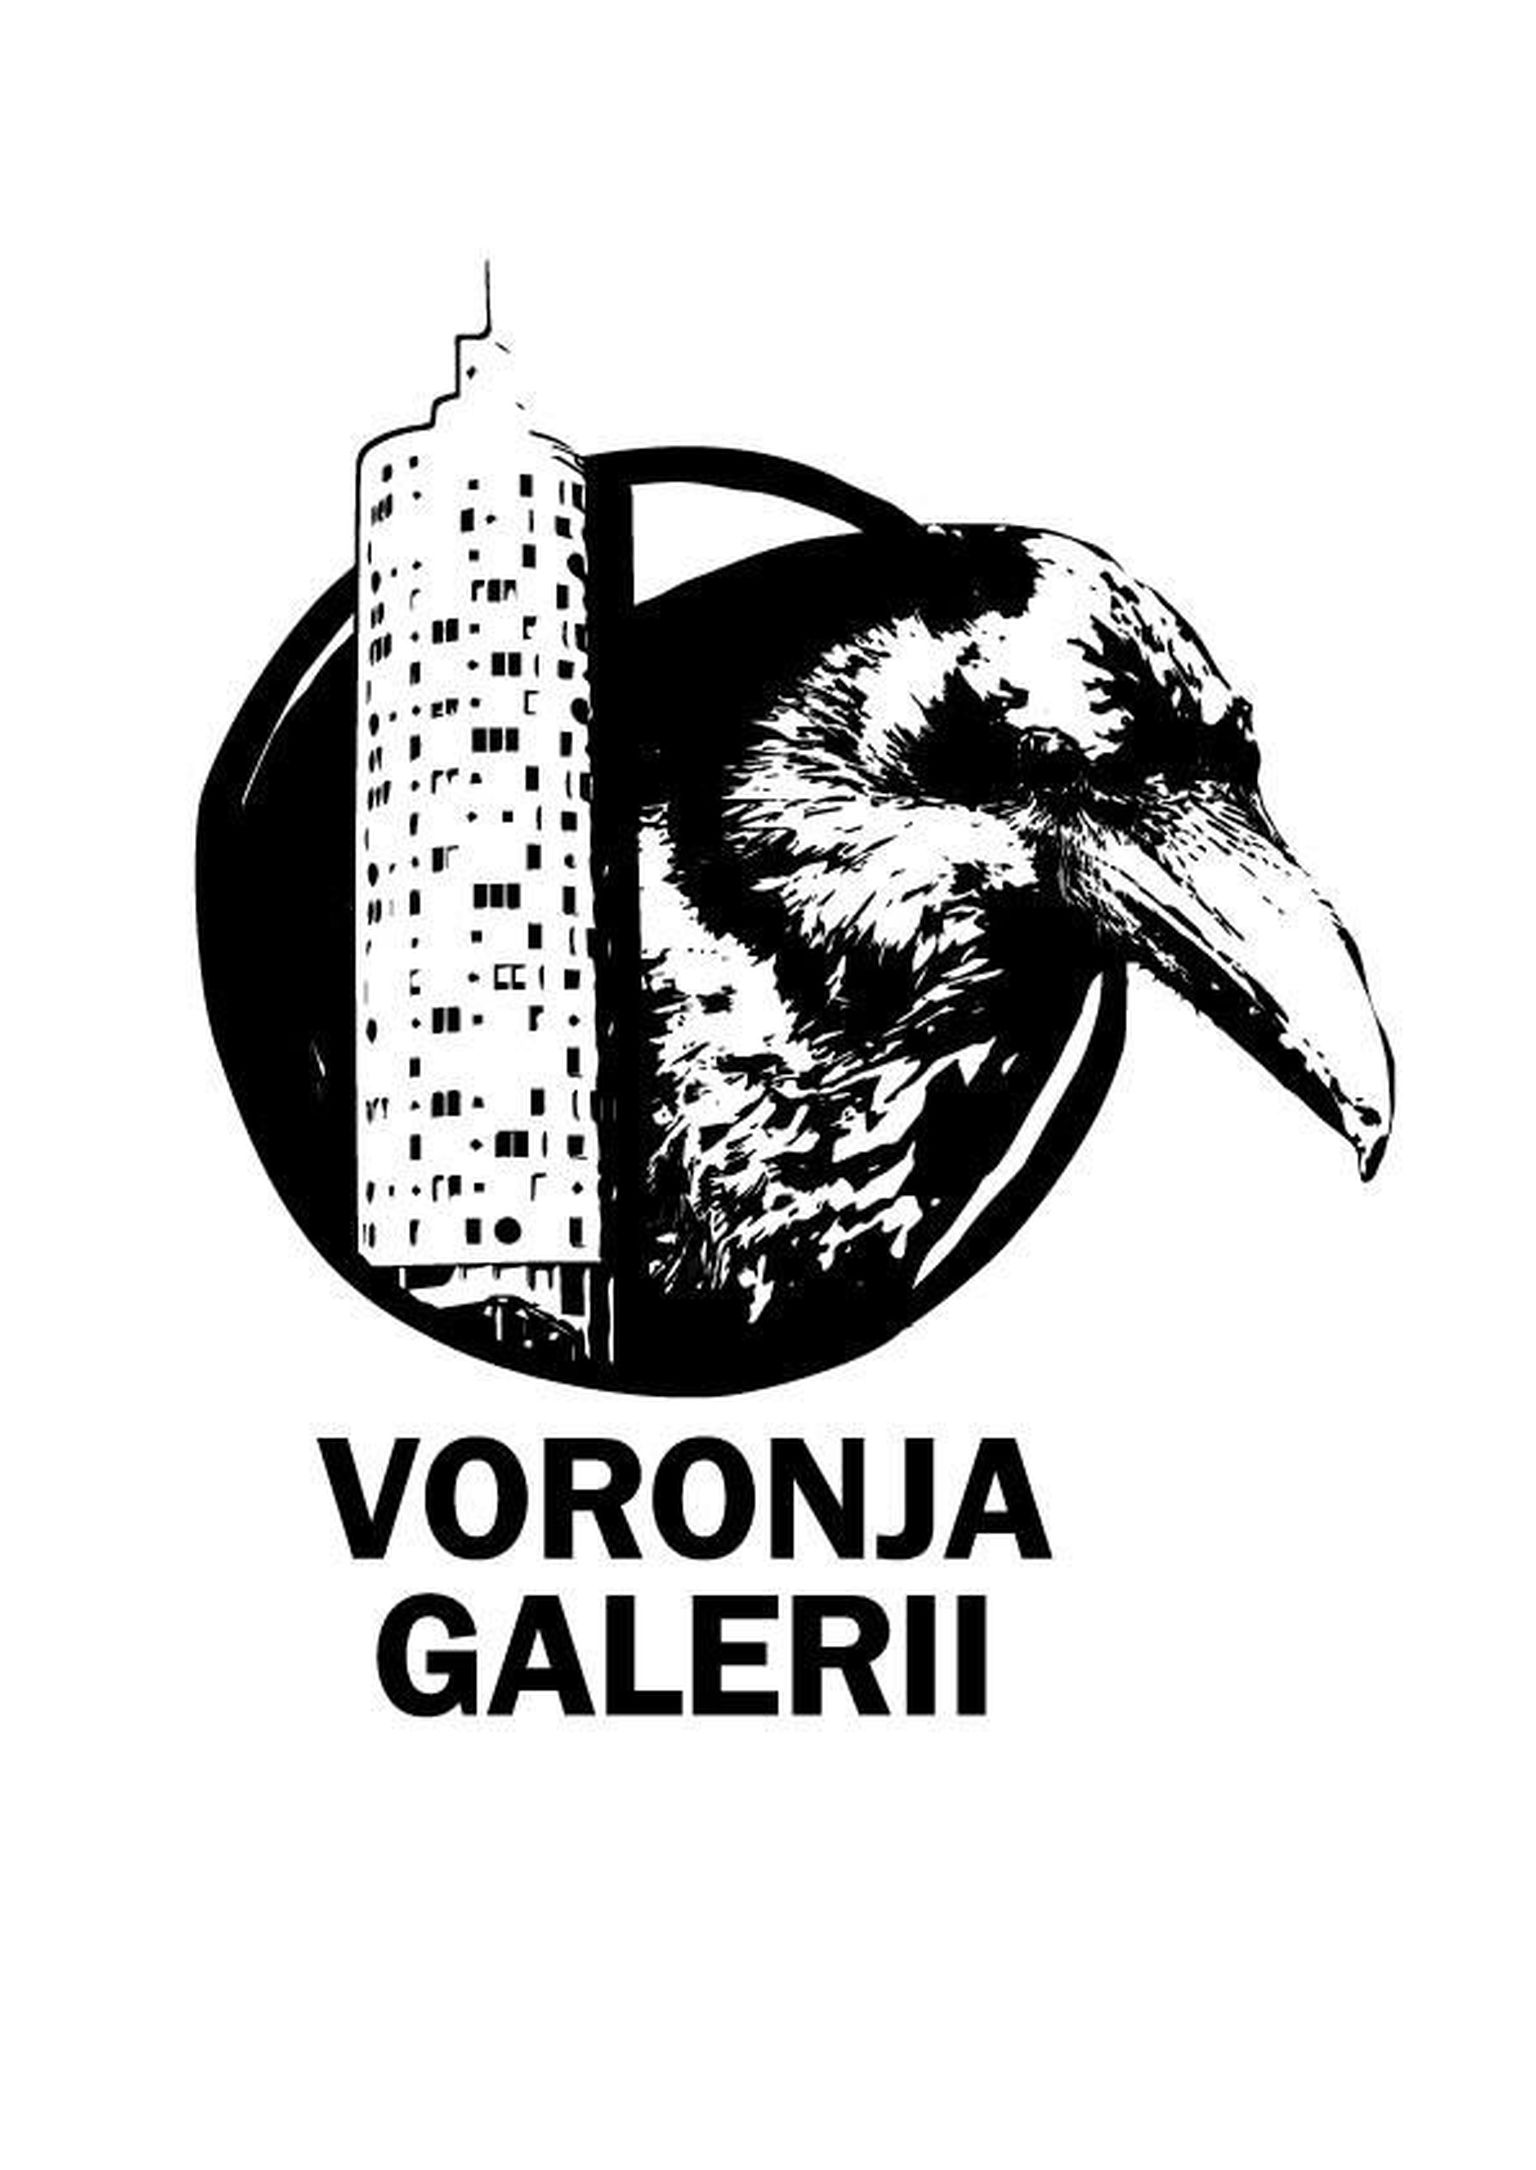 Voronja galerii korternäituste logo autor on tänavakunstnik Hapnik. Tema tehtud on ka varese pilt Varnjas galeriimaja seinal.